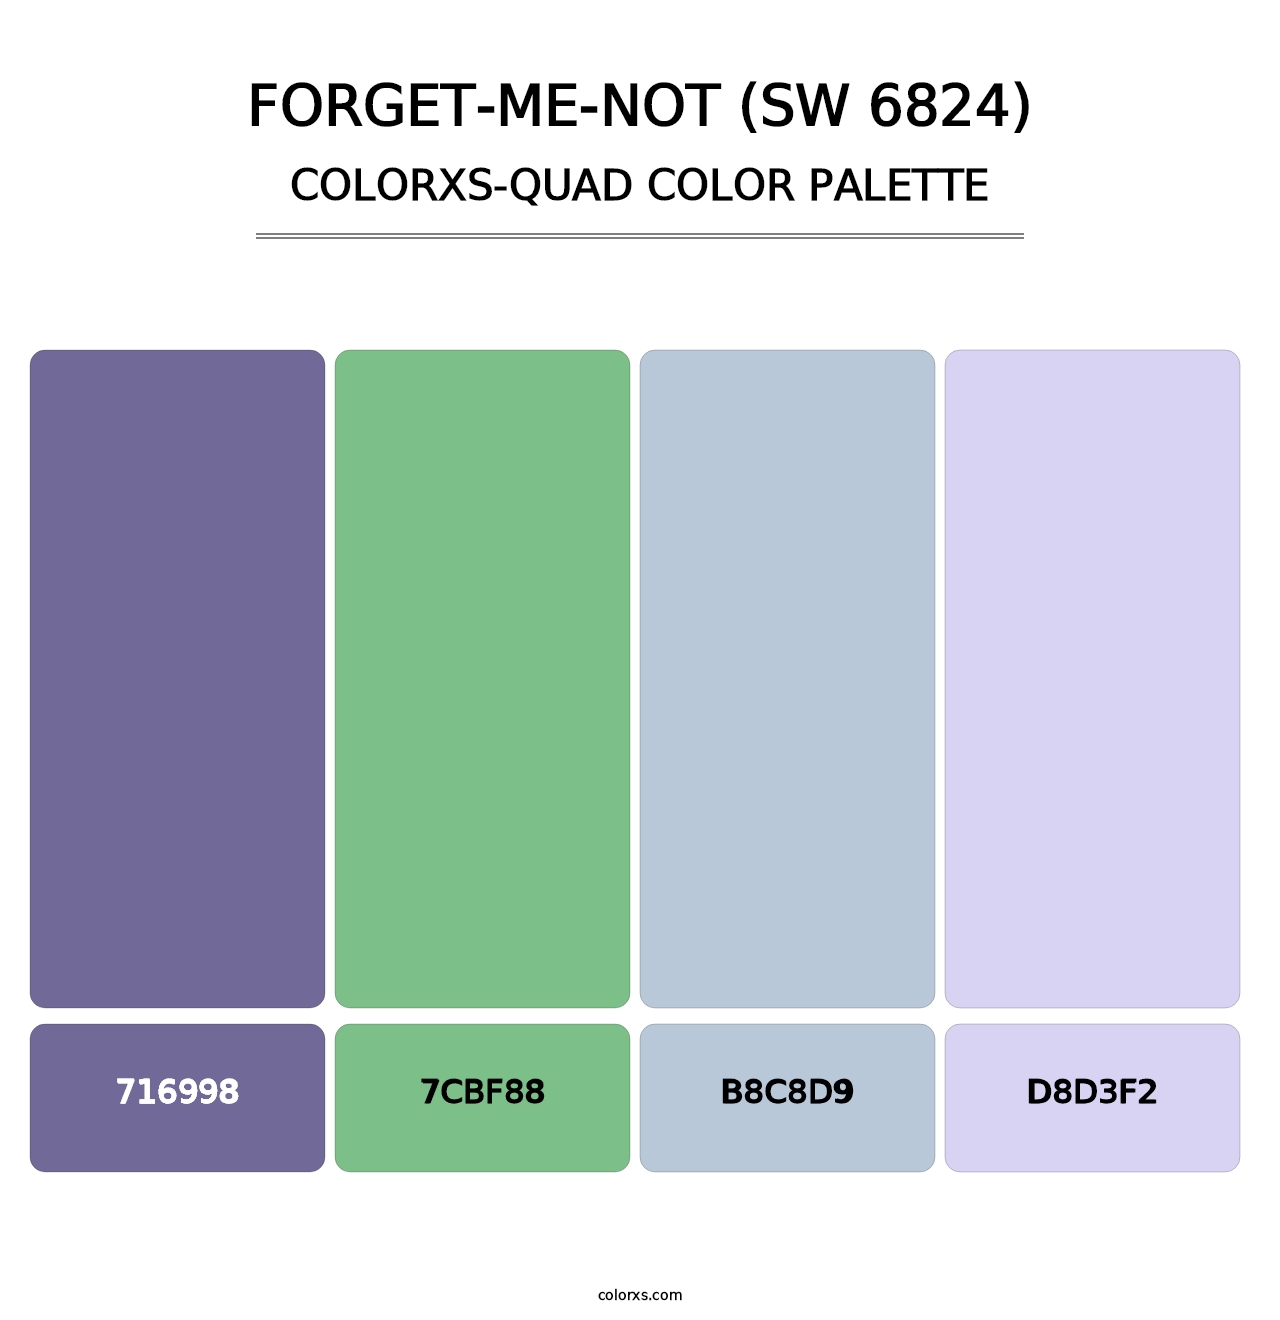 Forget-Me-Not (SW 6824) - Colorxs Quad Palette